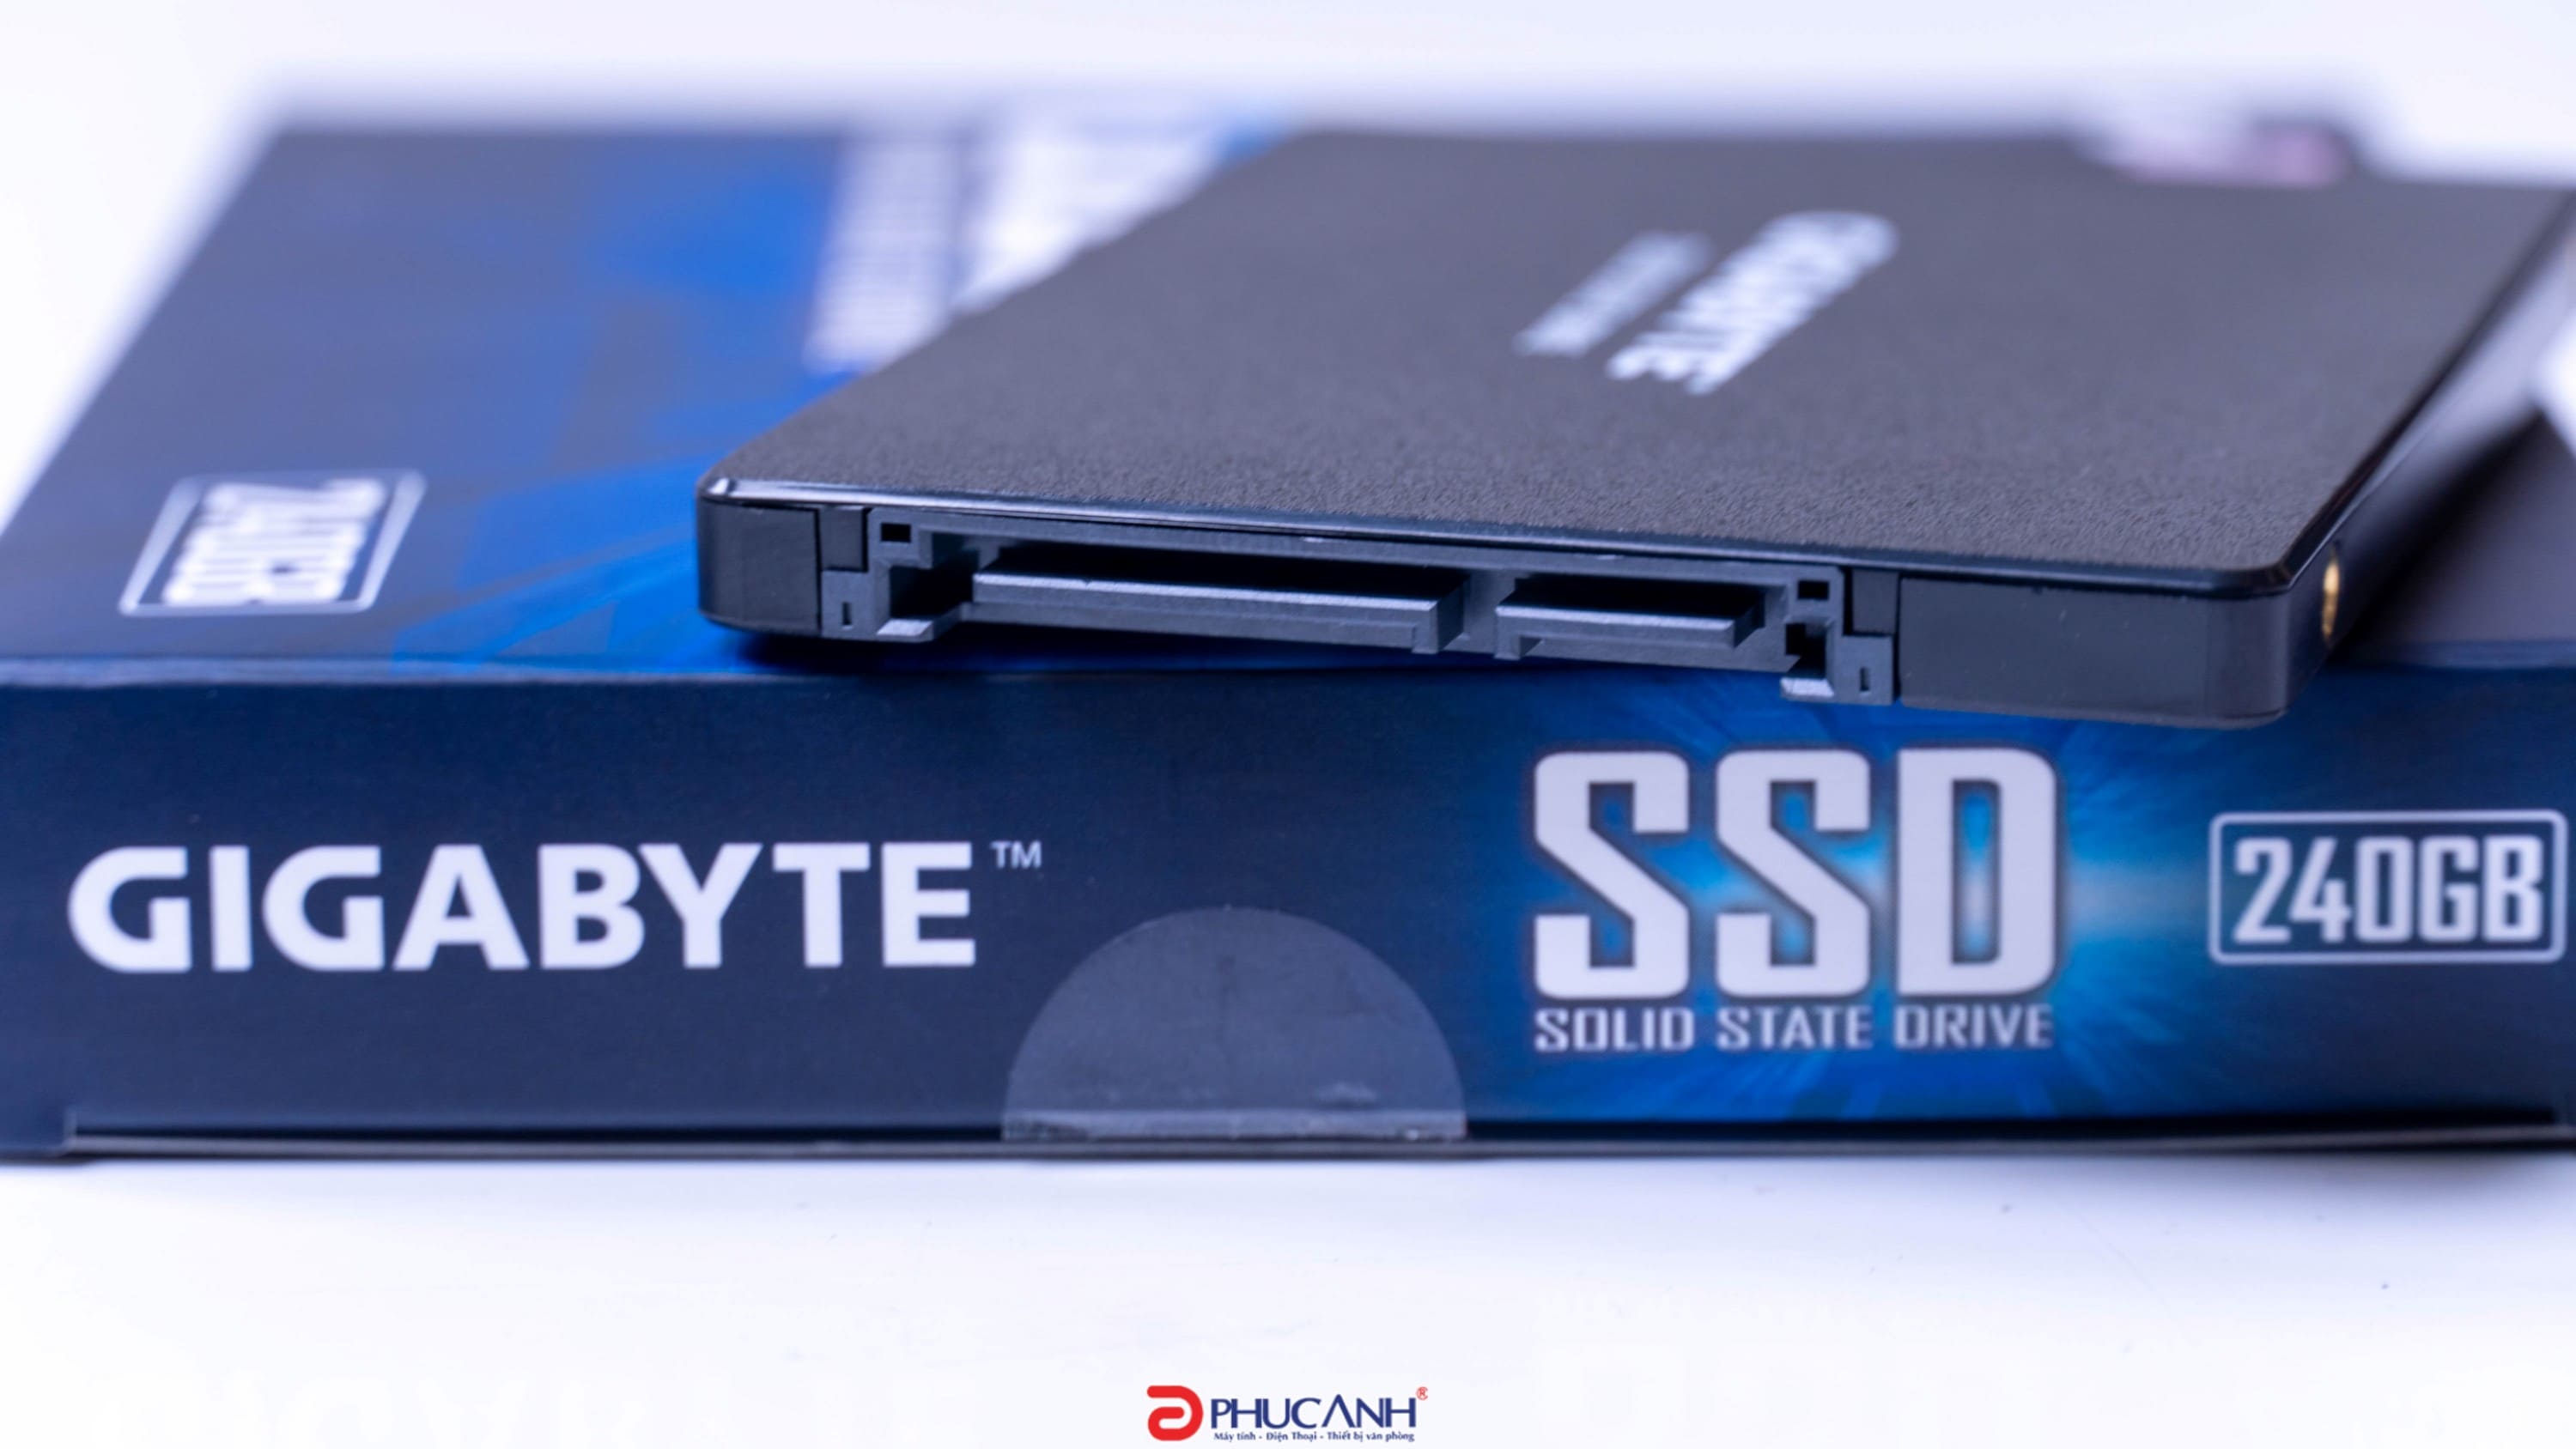 [Review] GIGABYTE SSD - Tốc độ cao, giá thành hợp lý cho người dùng yêu thích thương hiệu Gigabyte